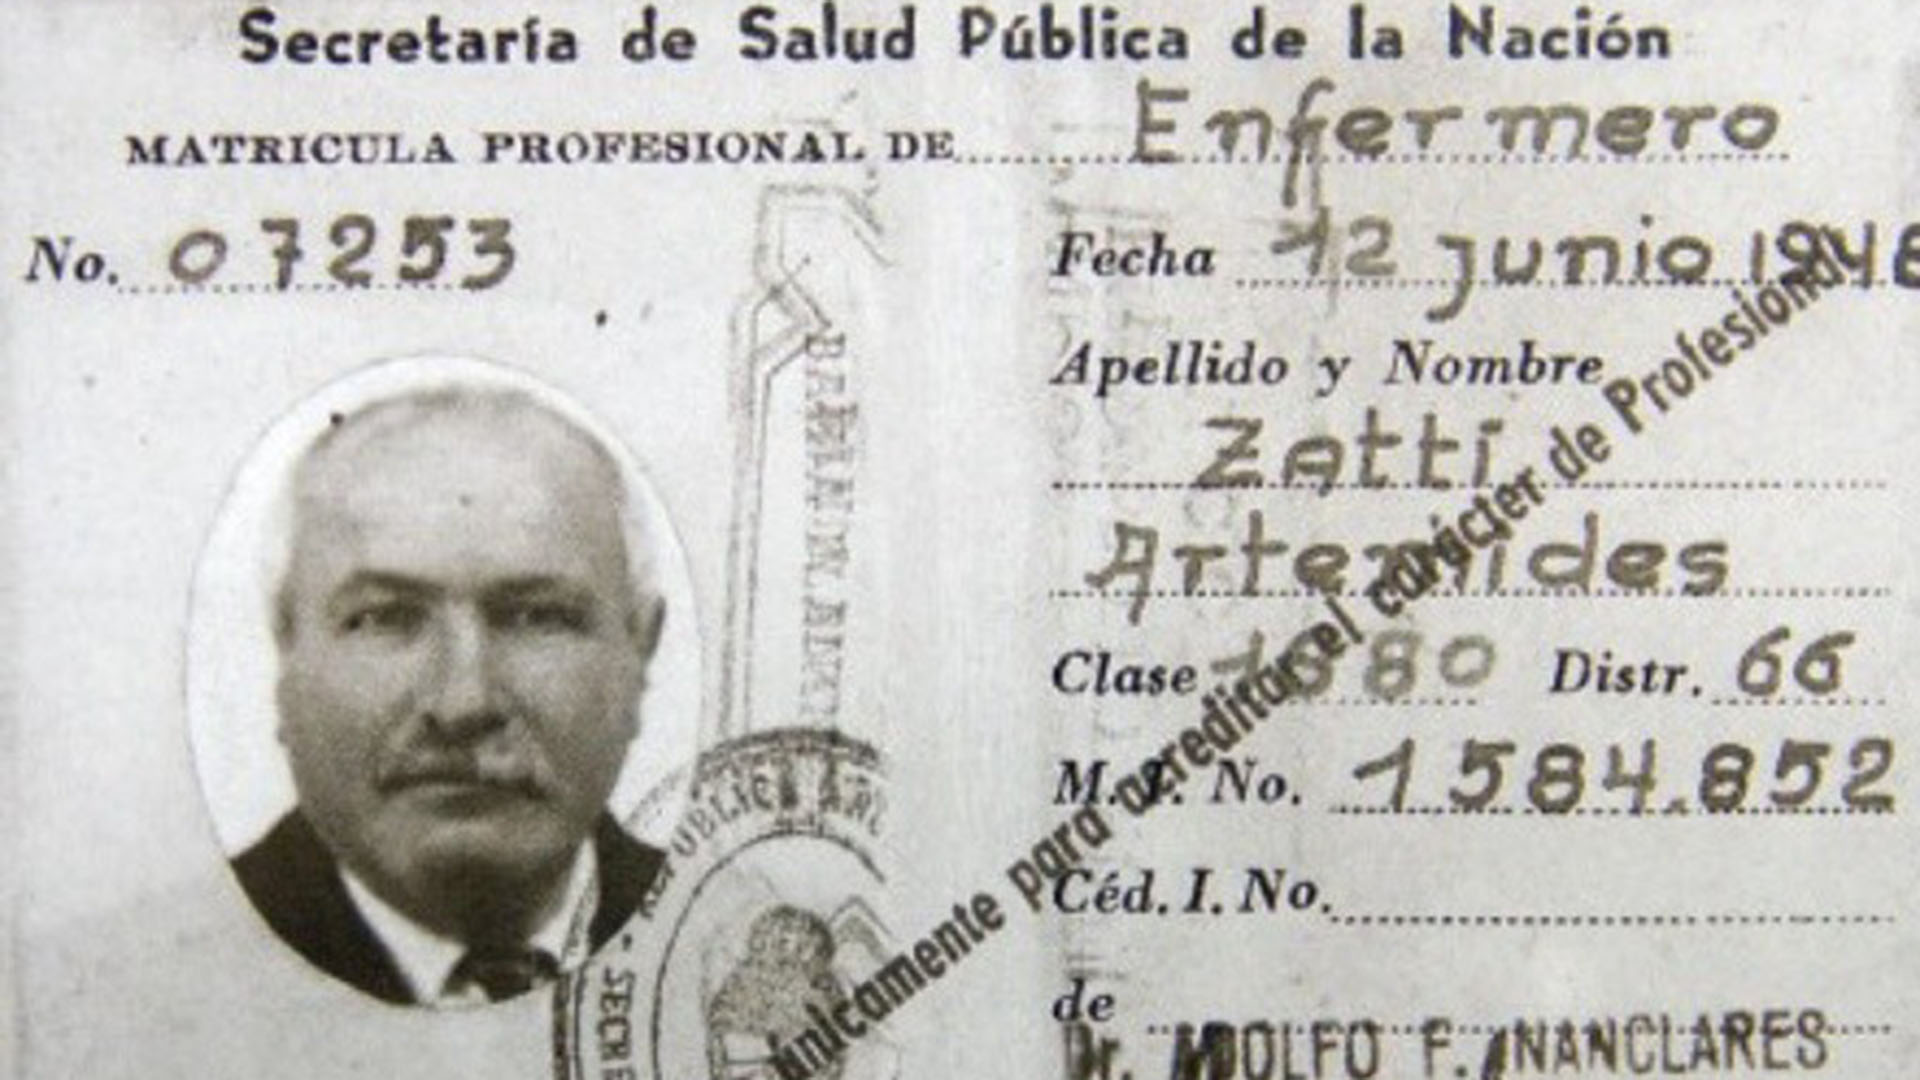 El documento de Artémides Zatti, un italiano naturalizado argentino